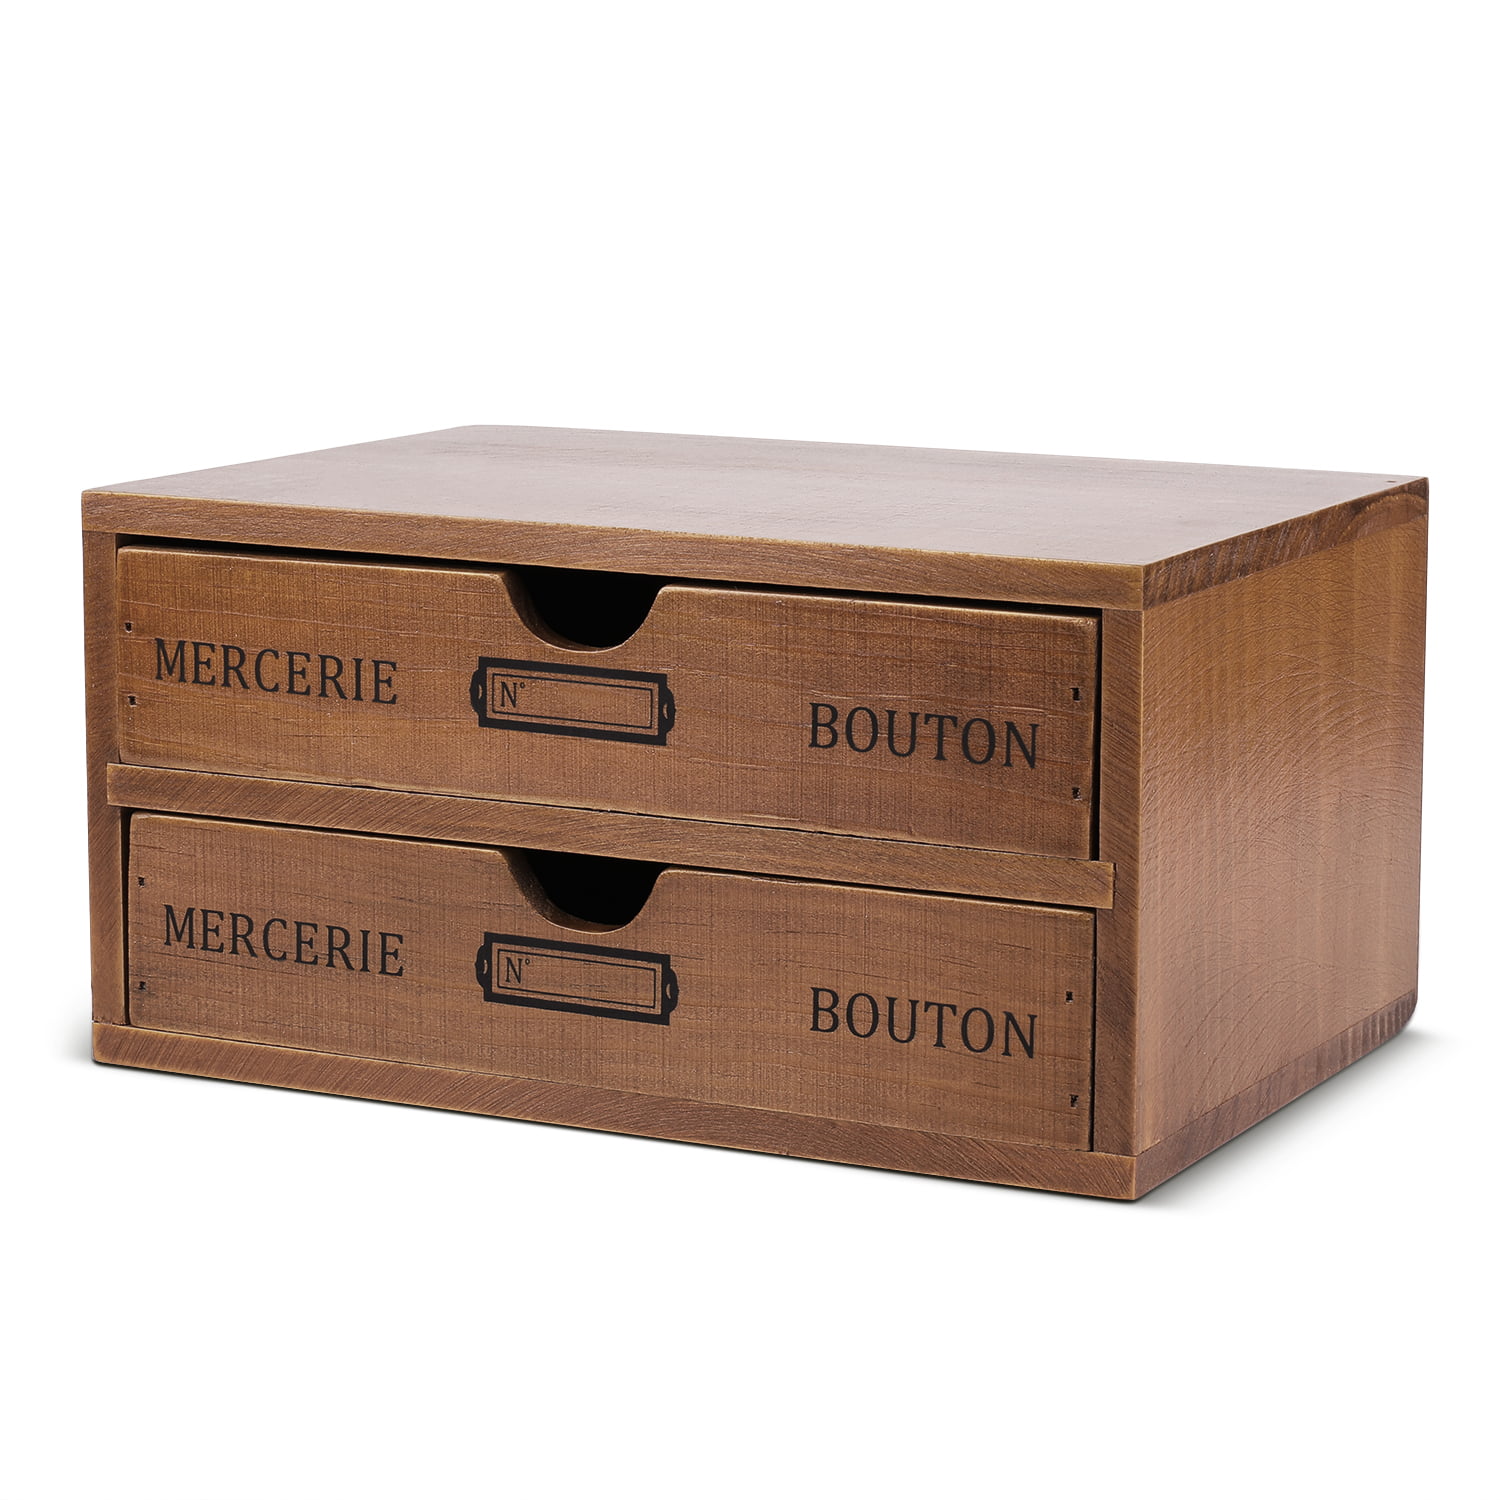 Wooden Beaded Jewelry Organizer Box Storage Organizer Wood Tray Dresser Tabletop